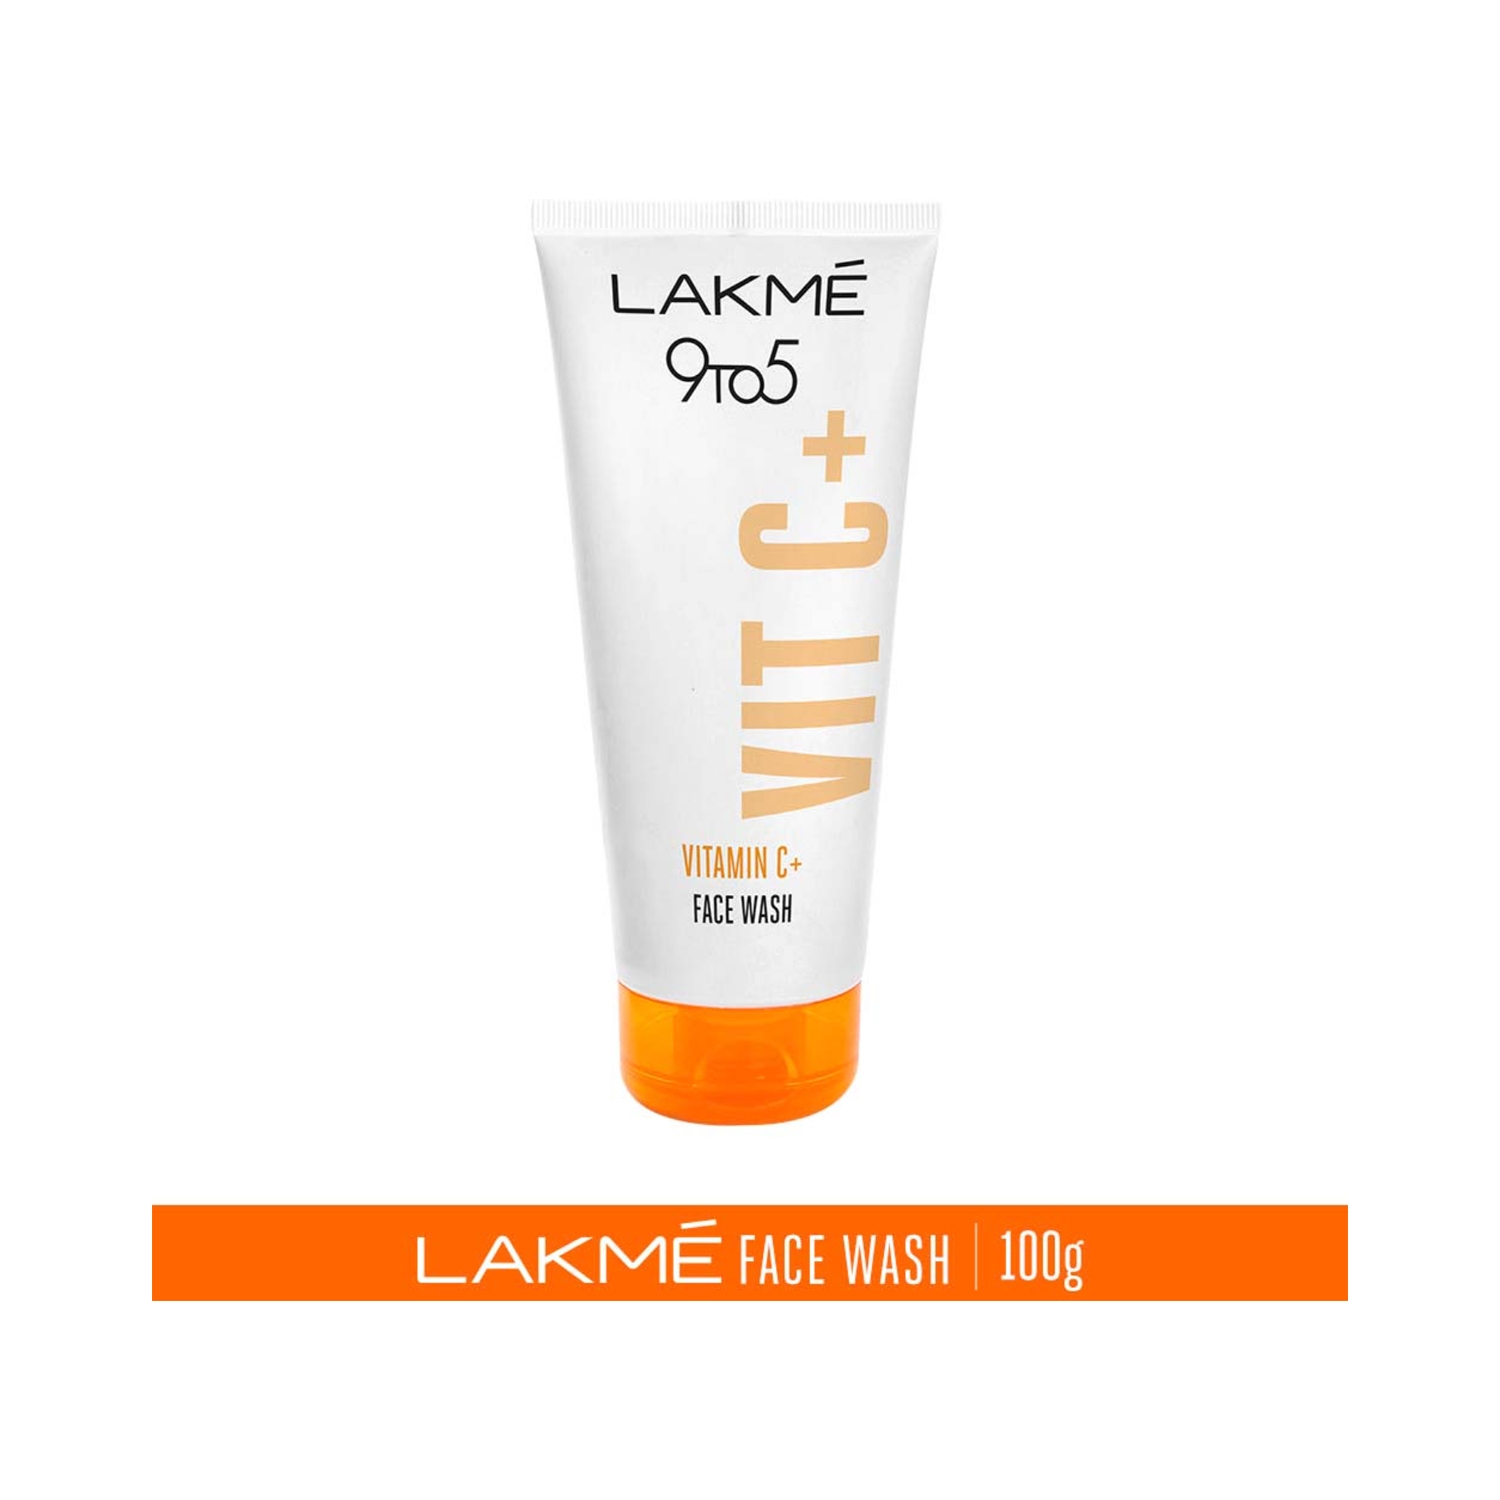 Lakme | Lakme 9 To 5 Vitamin C Facewash (100g)